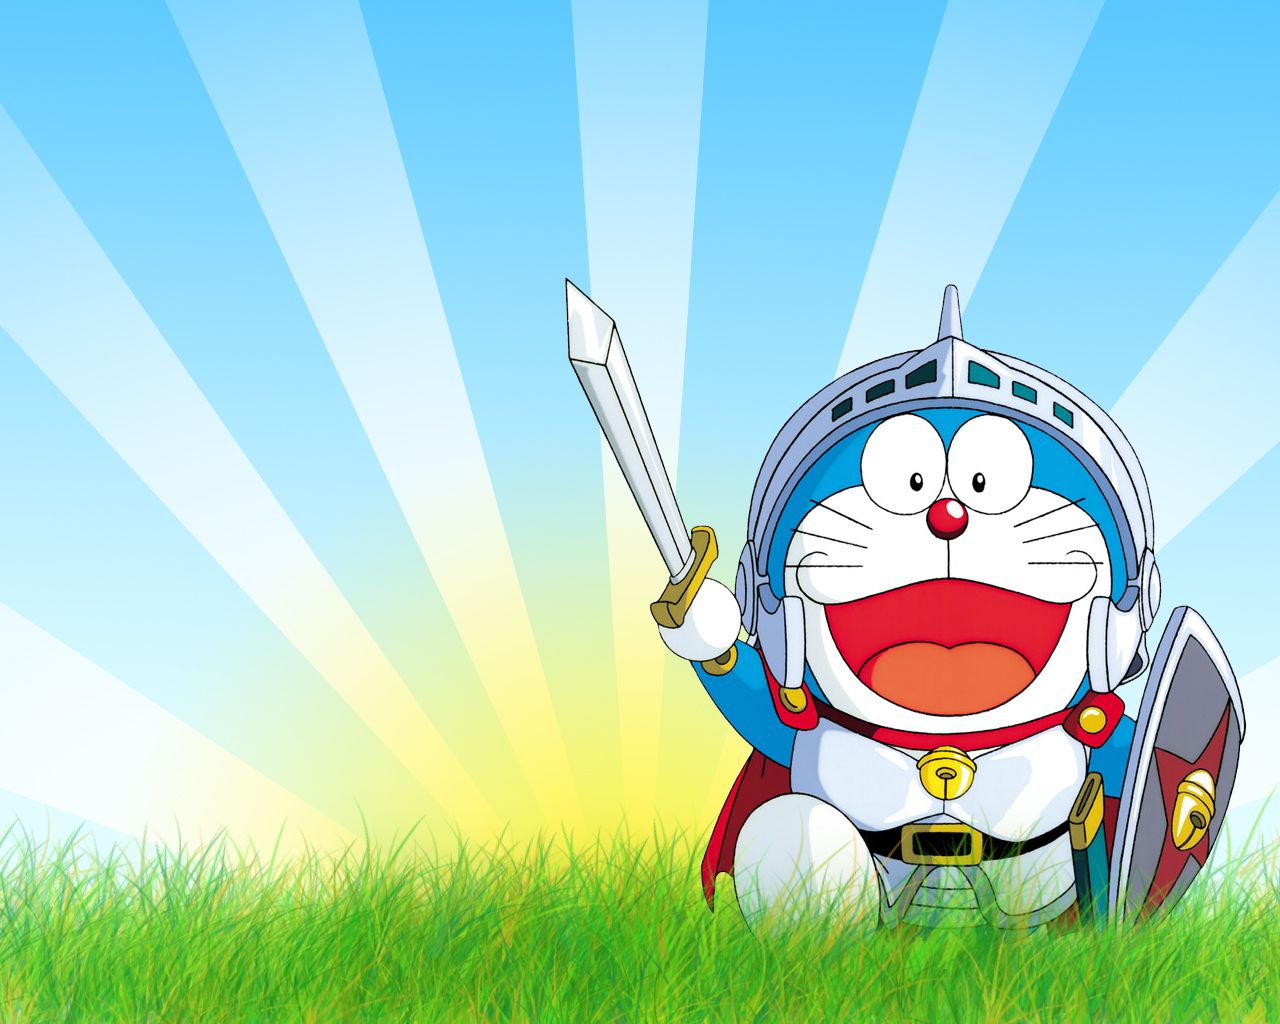 Doraemon là nhân vật quen thuộc với mọi lứa tuổi, hãy cập nhật cho mình những hình ảnh đẹp và lưu giữ những khoảnh khắc tuyệt vời với Doraemon. Cùng khám phá những hình ảnh sinh động về nhân vật này ngay bây giờ.